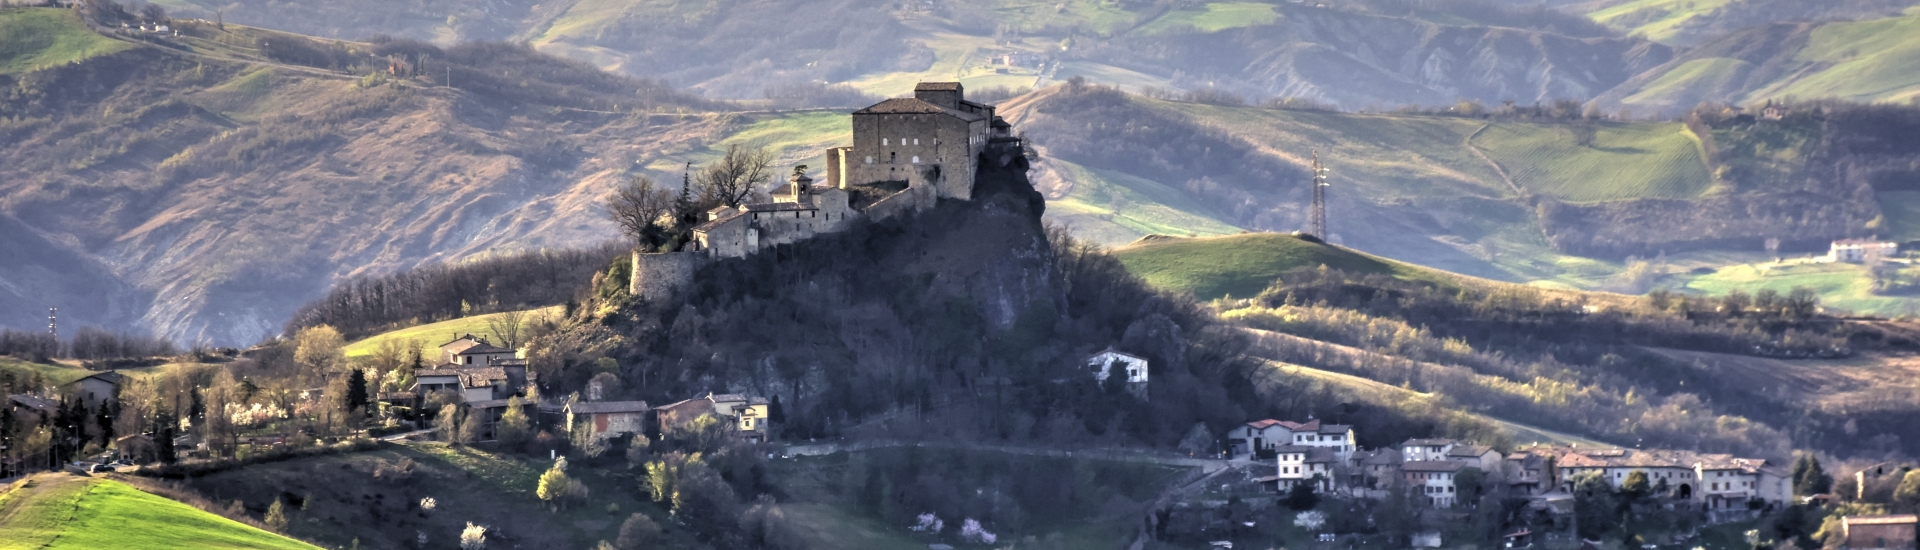 Il Castello di Rossena. Ph. Credit Progetto Regionale Castelli Emilia-Romagna
